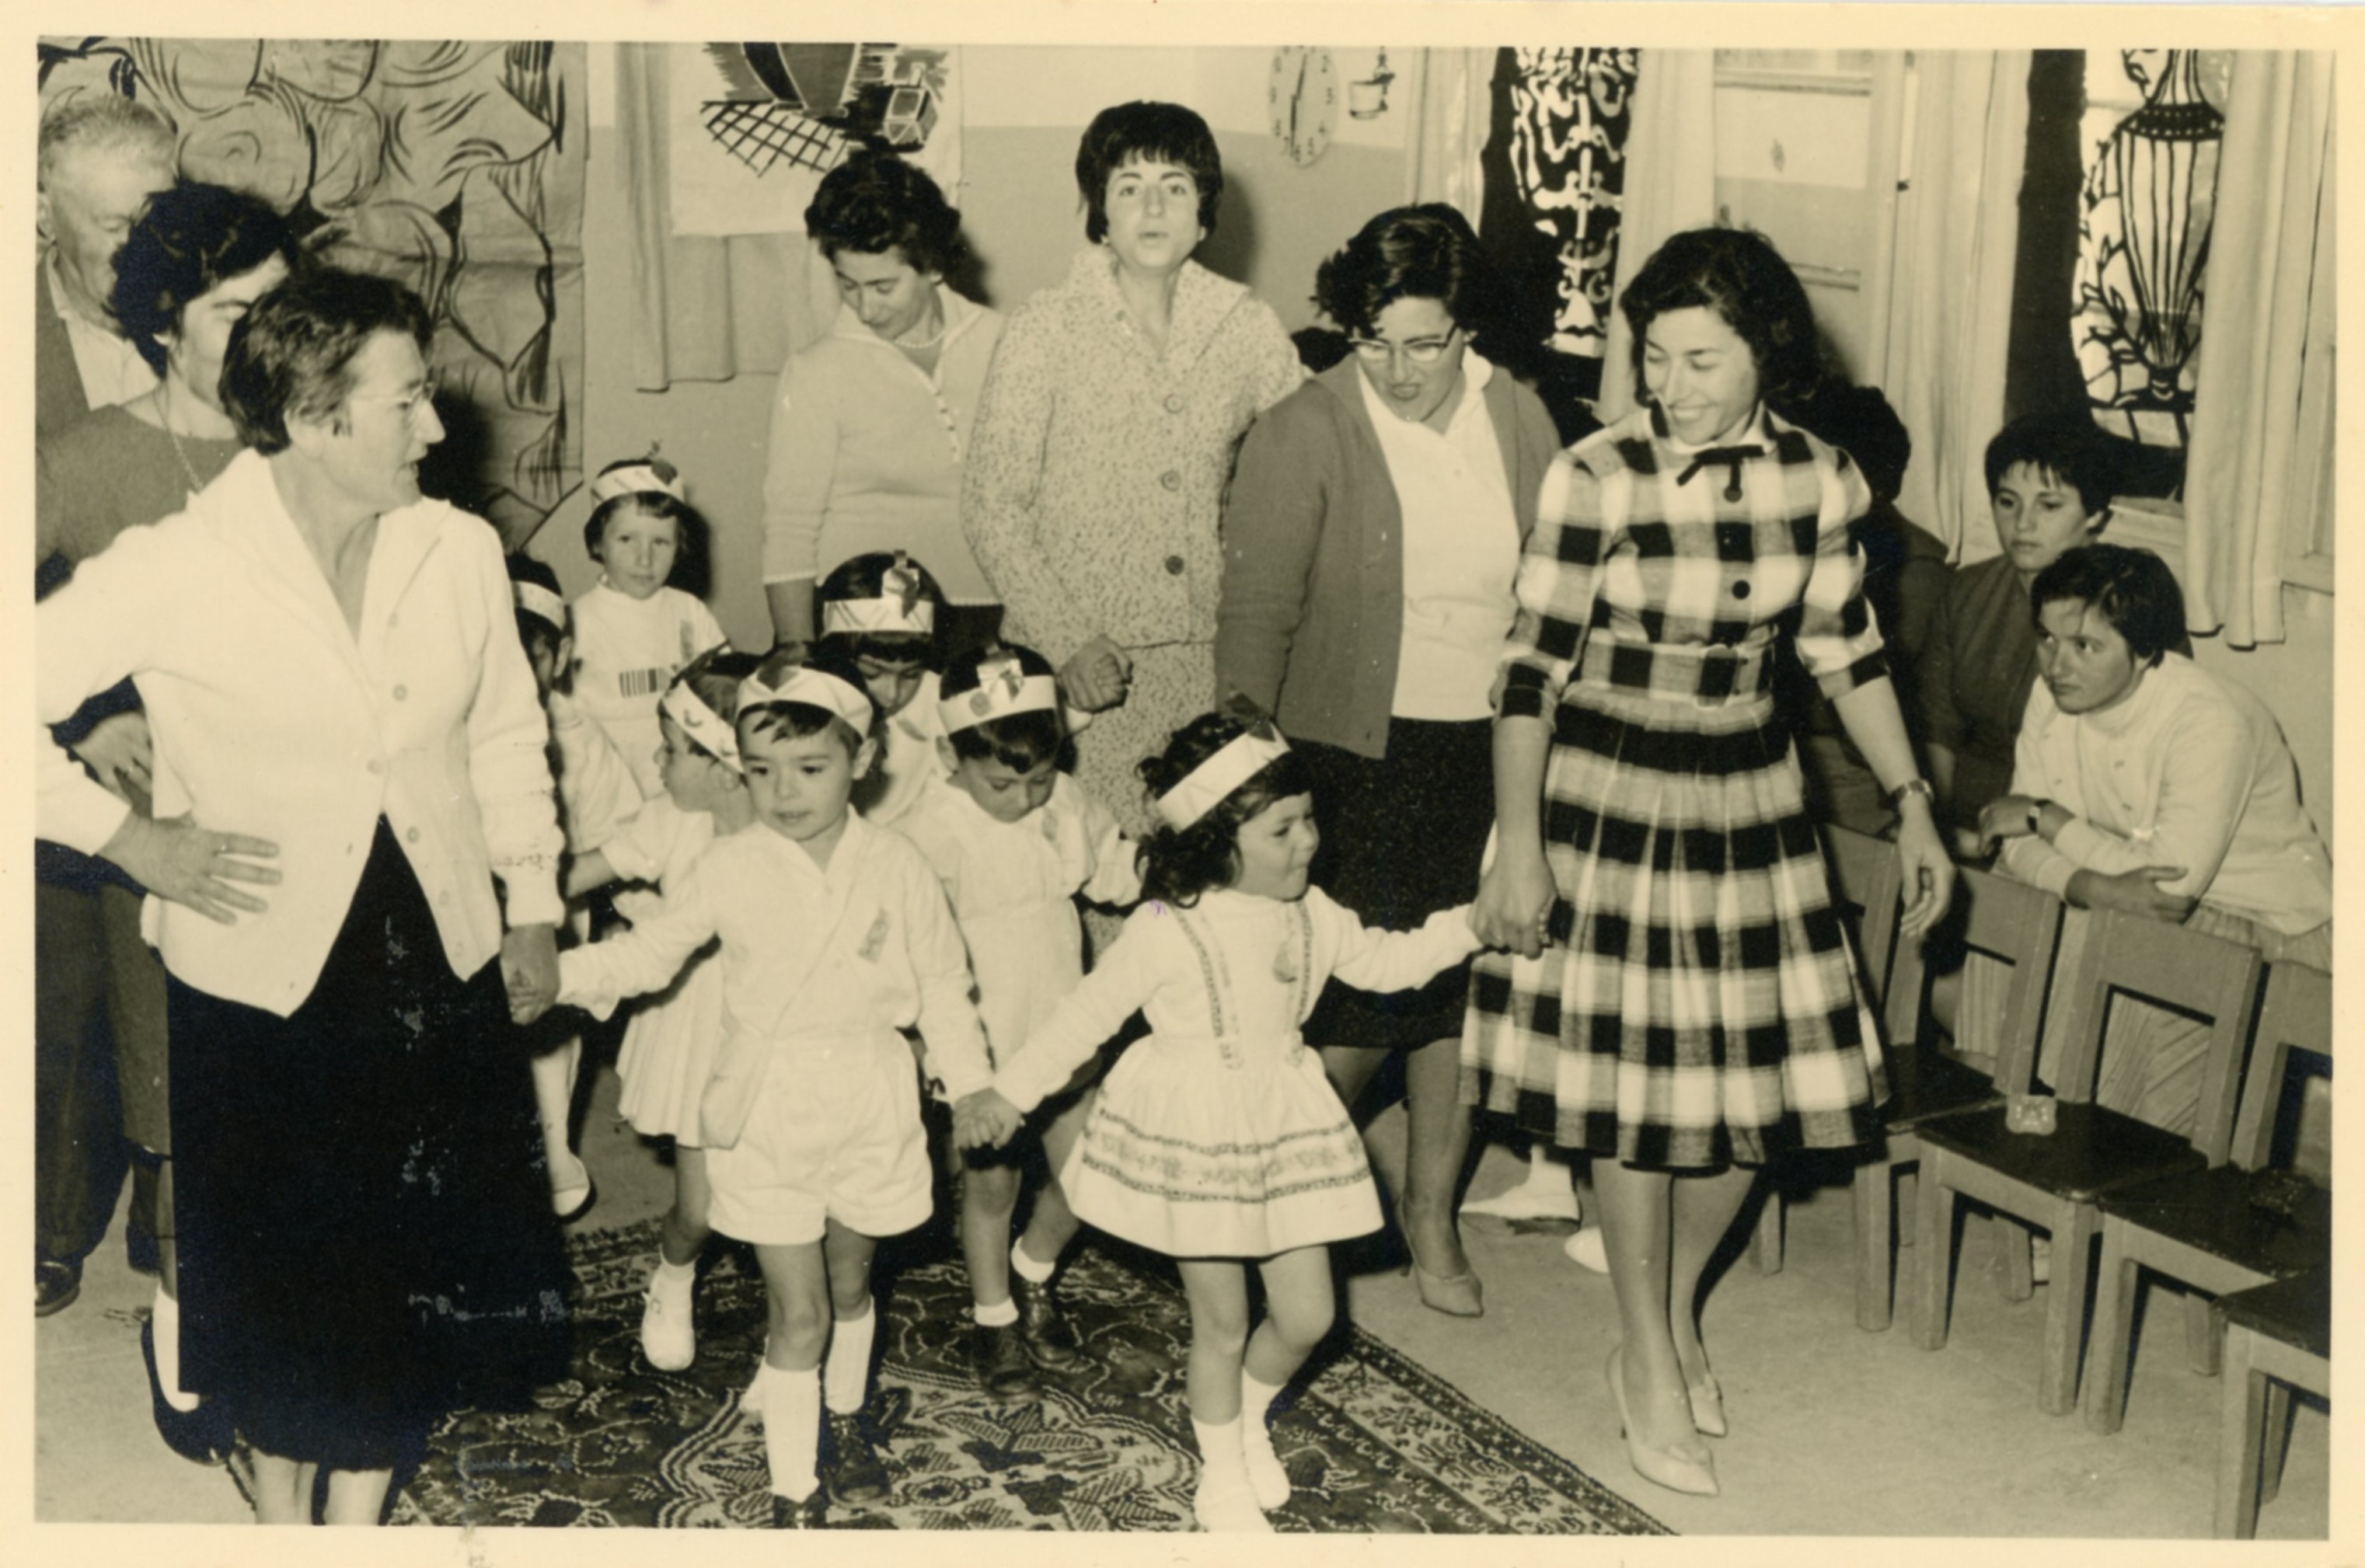 גן אורה, 1962. מימין בתיה איצקוביץ ובתה רחלה. מאחוריה גברת גולדשטיין ובנה בועז, שלישית בטי זהבי ובתה גילה. משמאל הגננת אורה